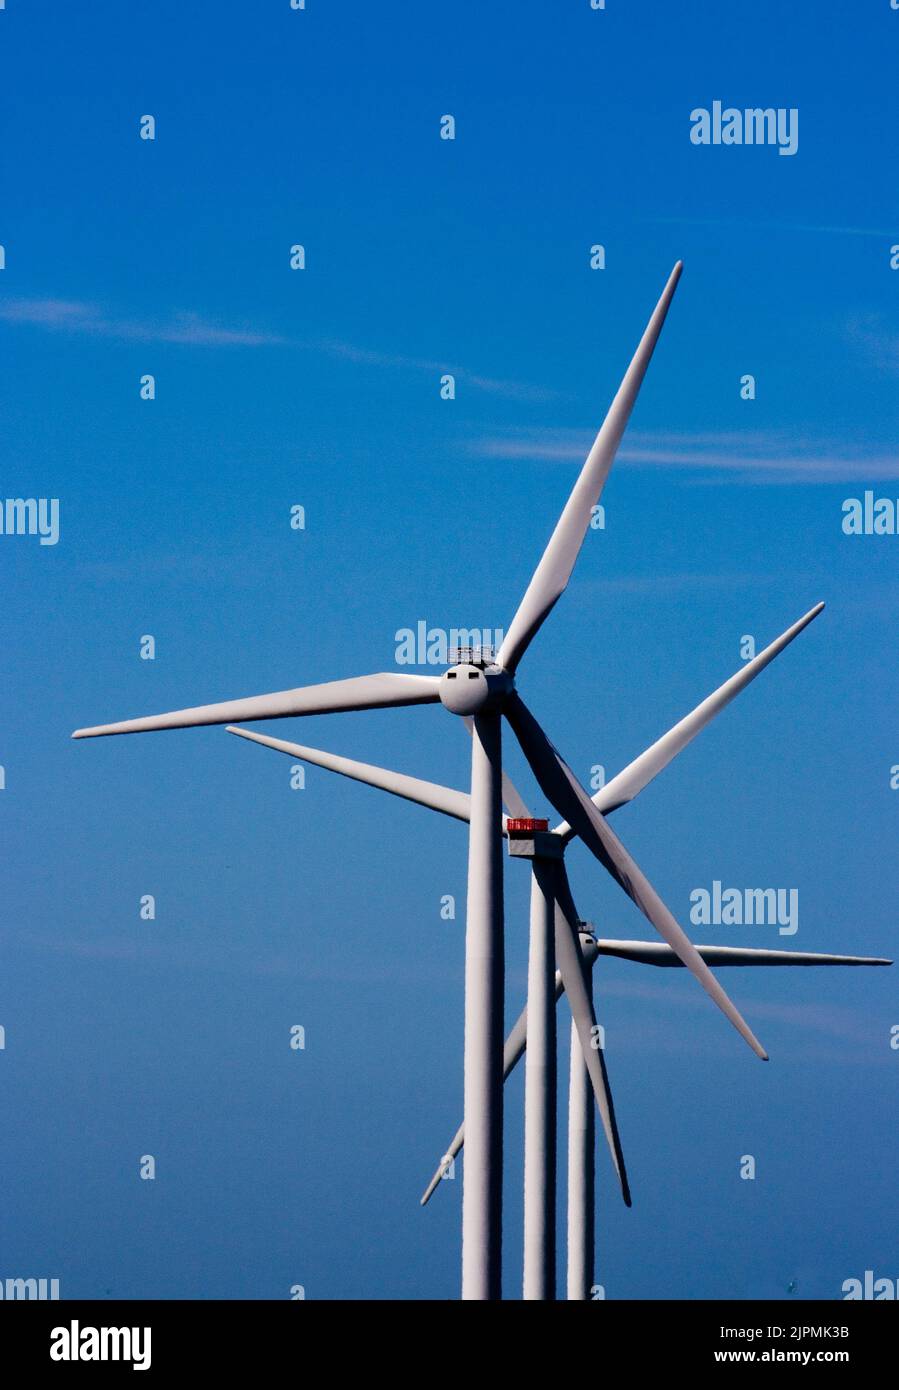 3 Windräder in Reihe hintereinander gegen blauen Himmel * three wind turbines in a row against blue sky Stock Photo